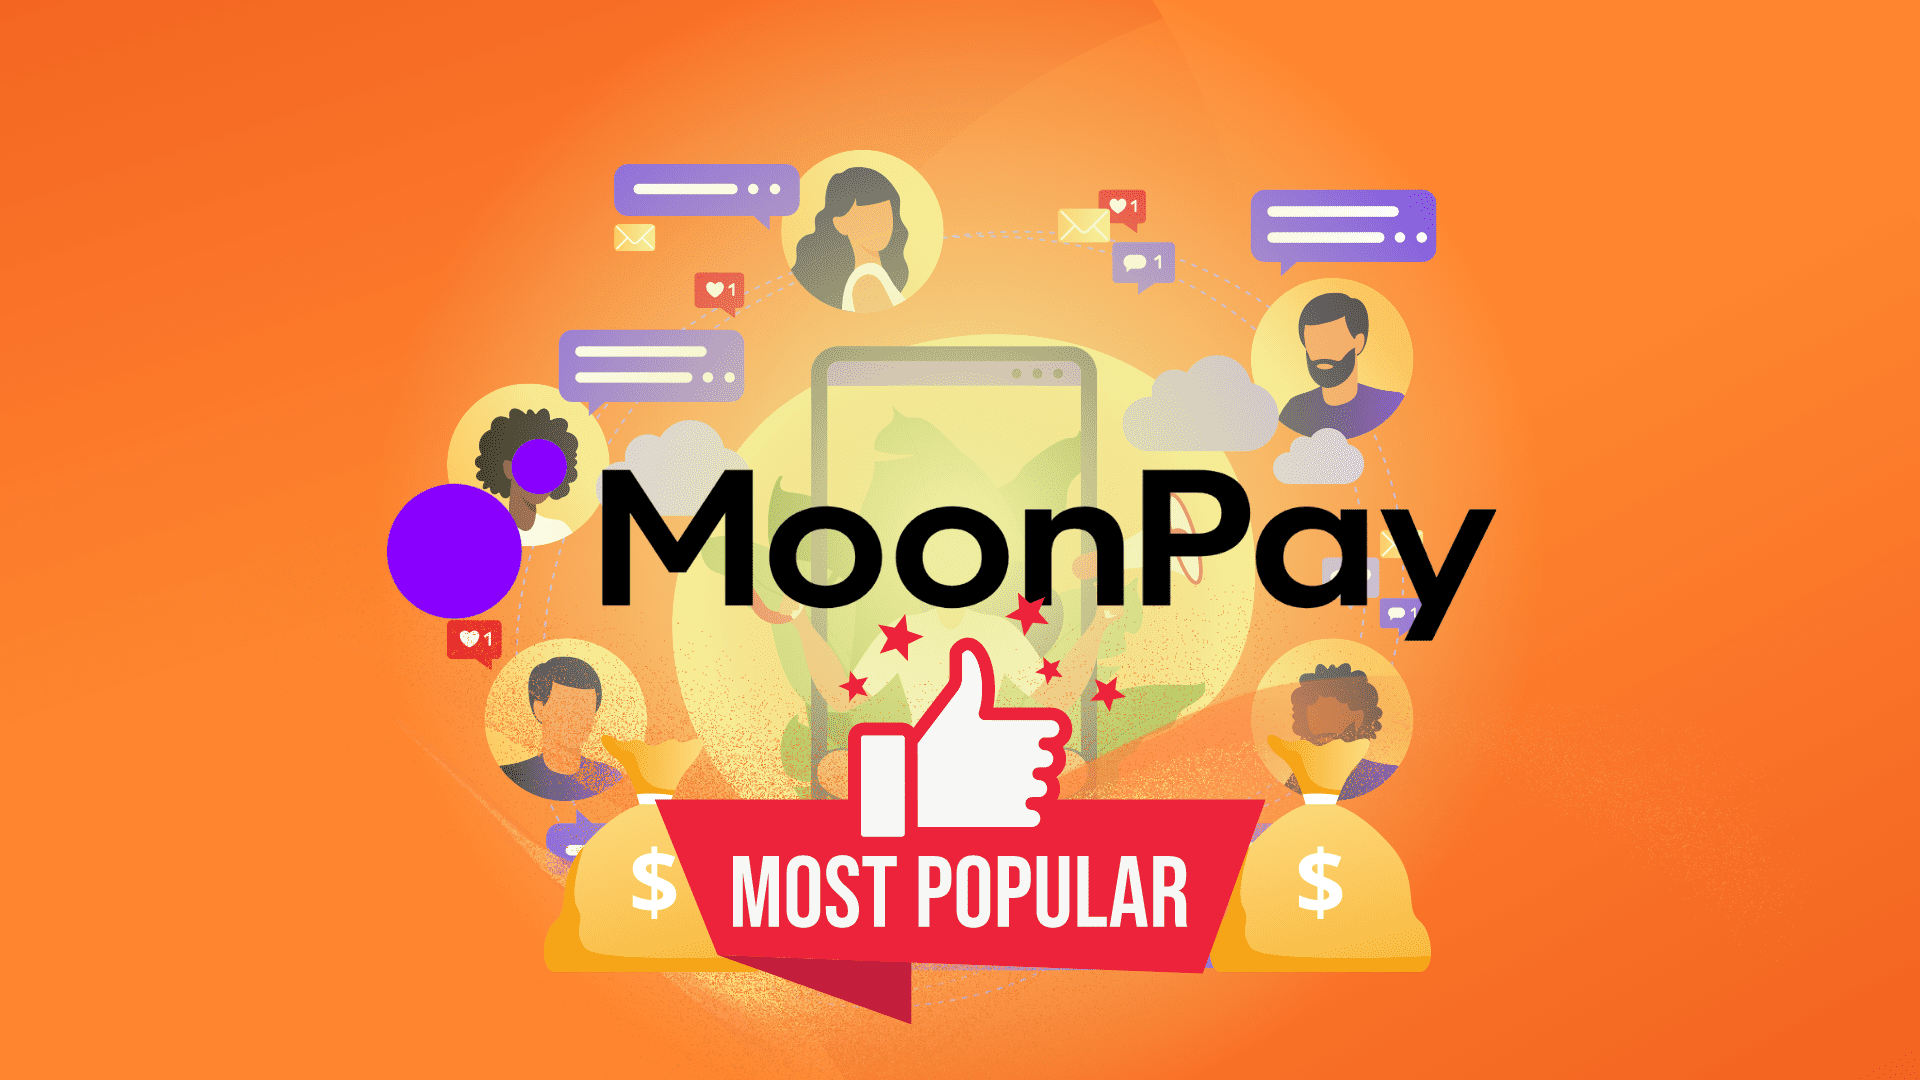 MoonPay пользуется популярностью среди знаменитостей, которые опддерживают площадку. Также платформы завершила раунд серии A на 550 млн долларов при оценке в 3,4 млрд